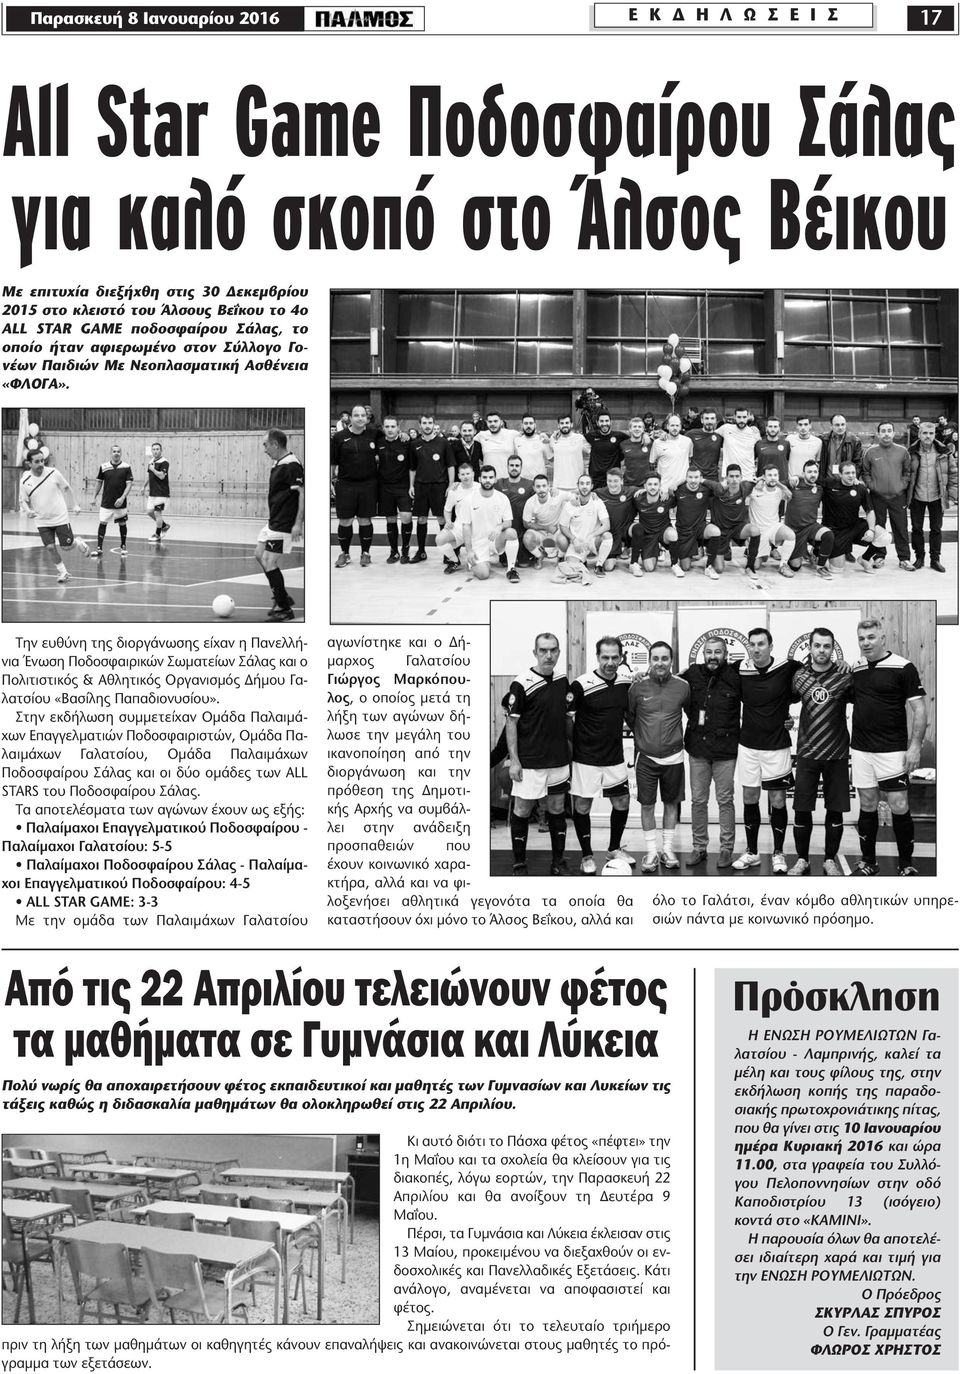 Την ευθύνη της διοργάνωσης είχαν η Πανελλήνια Ένωση Ποδοσφαιρικών Σωµατείων Σάλας και ο Πολιτιστικός & Αθλητικός Οργανισµός ήµου Γαλατσίου «Βασίλης Παπαδιονυσίου».